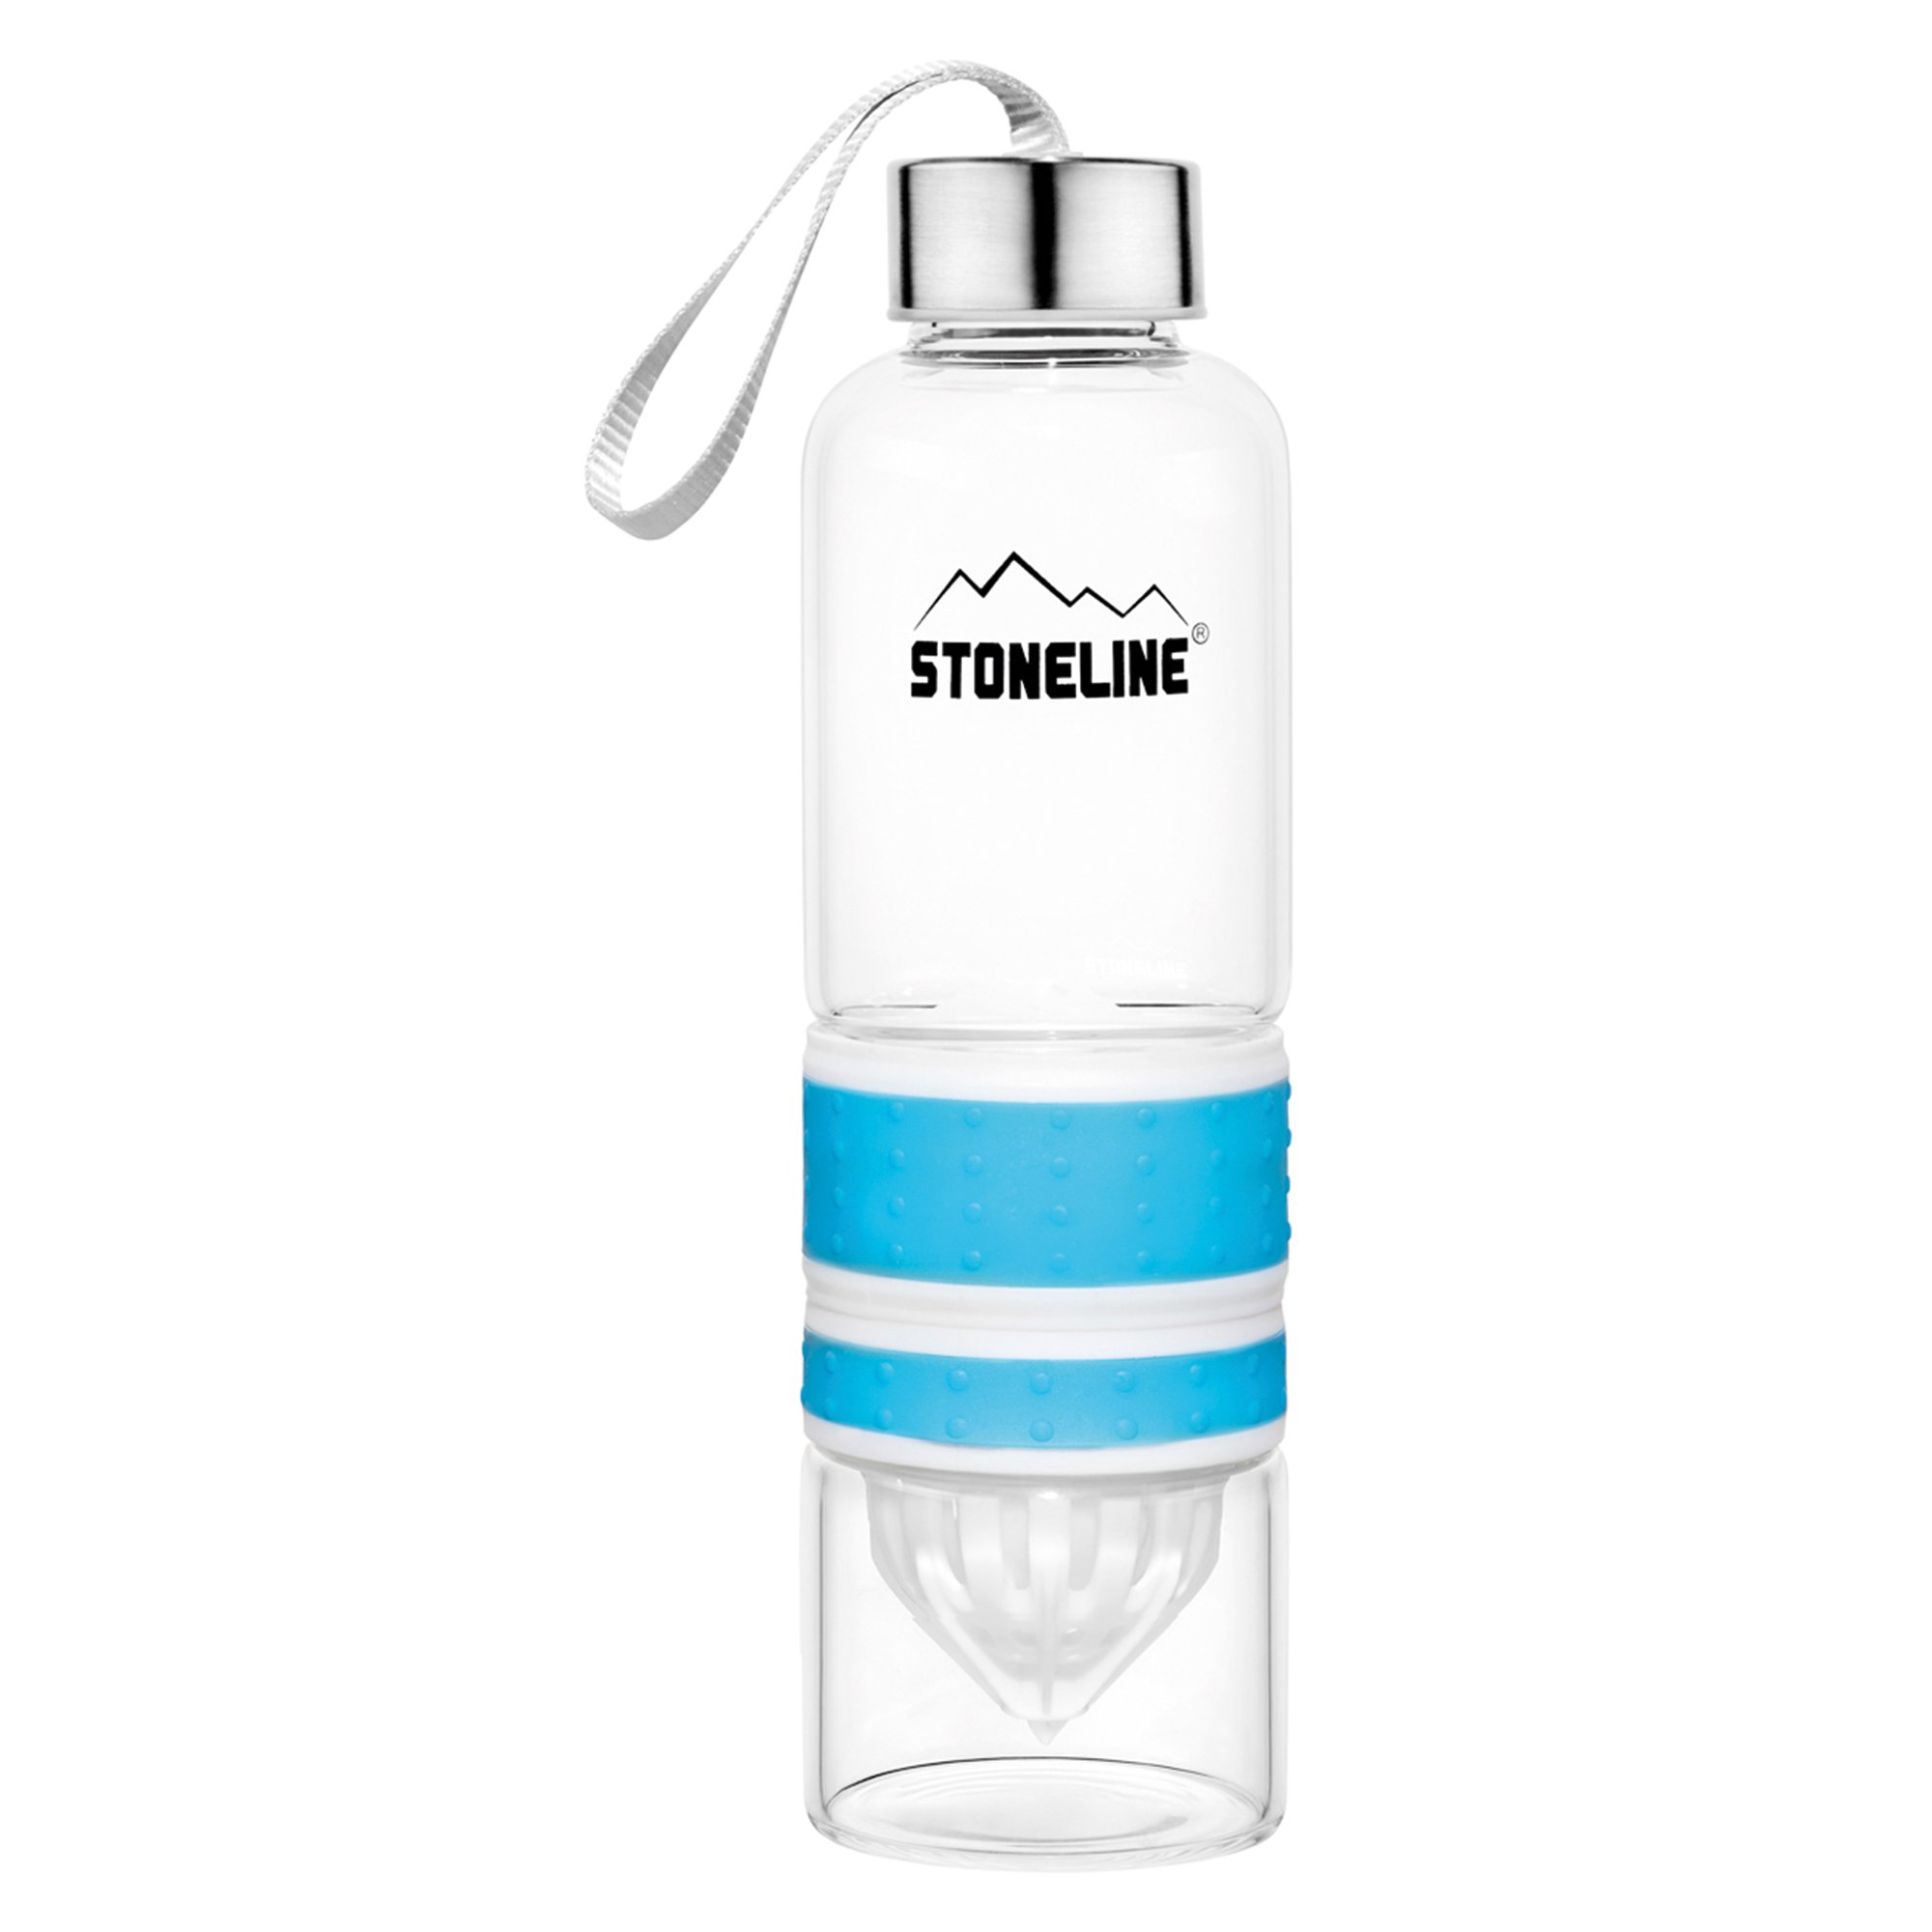 STONELINE® 2 in 1 Bottiglia con Spremiagrumi Spremifrutta manuale 550 ml | blu